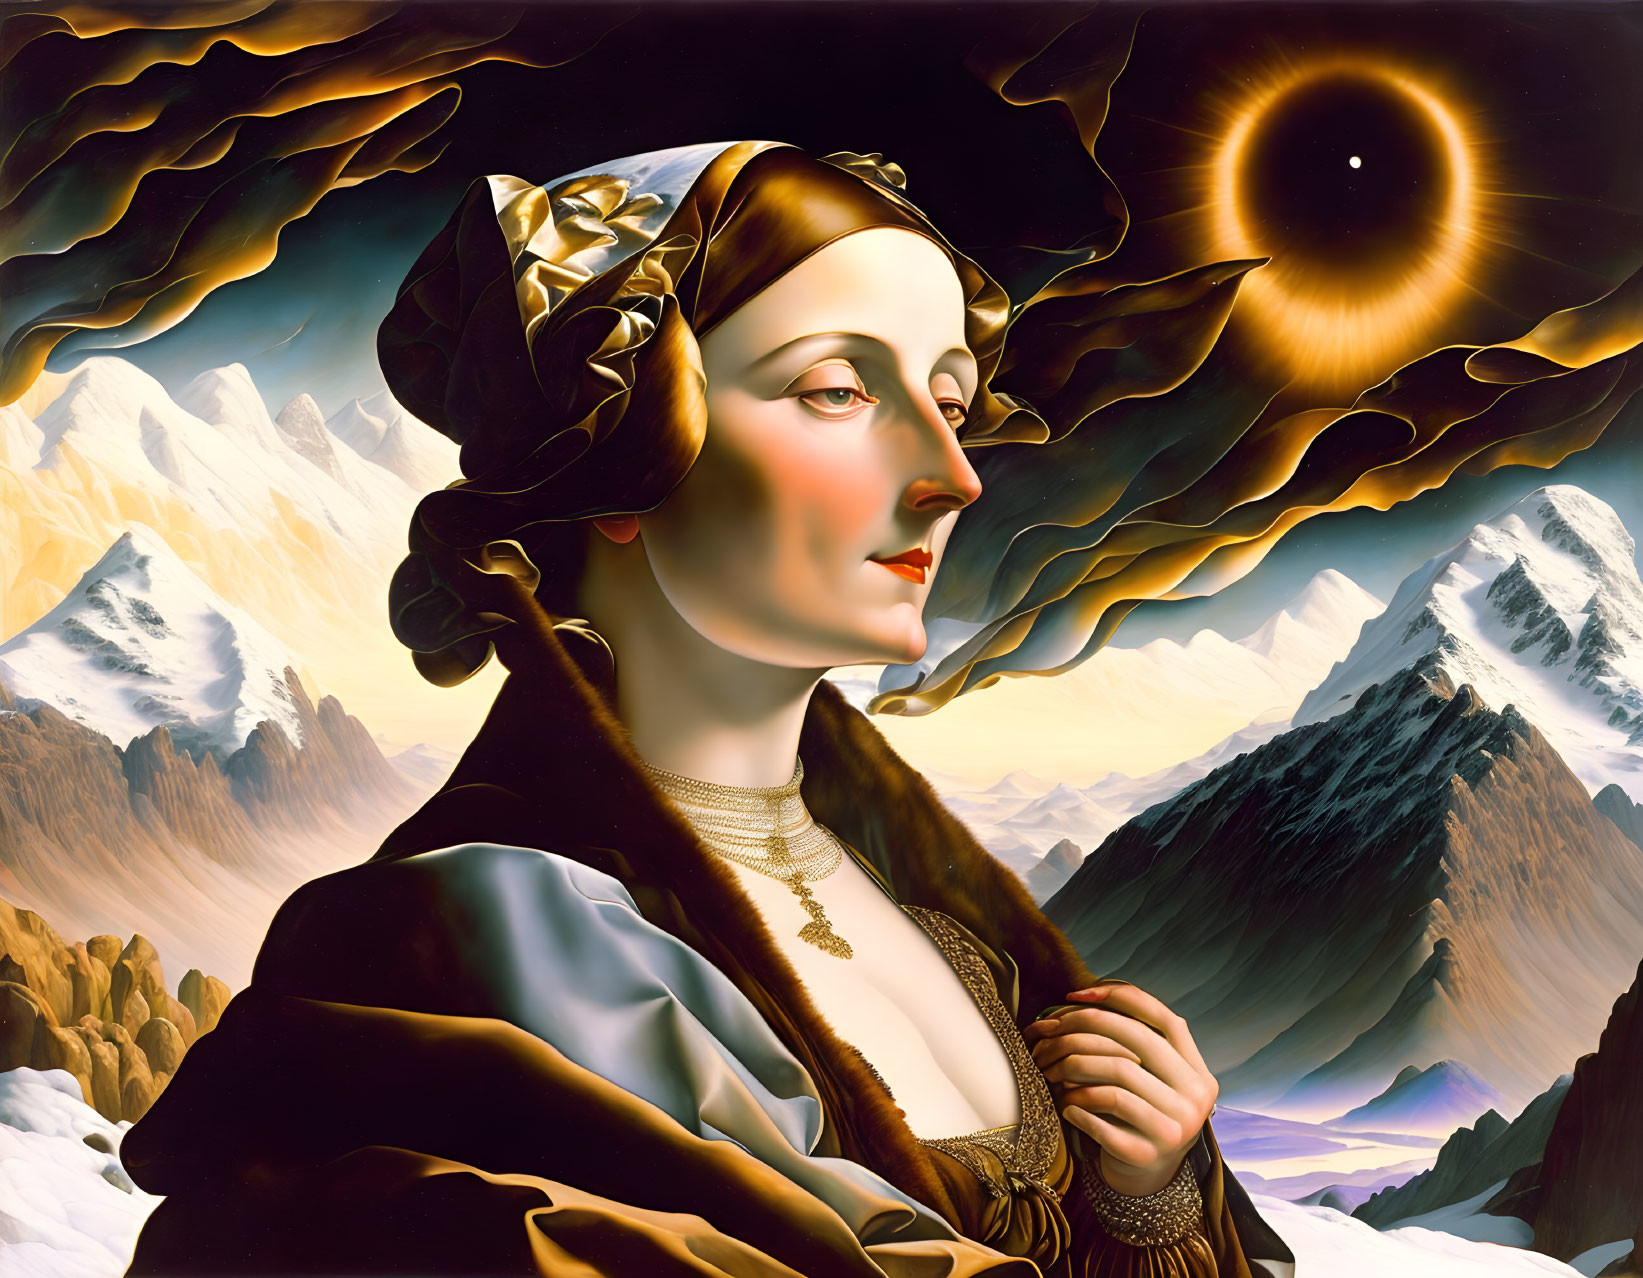 Surrealist portrait of woman with mountainous landscape and solar eclipse